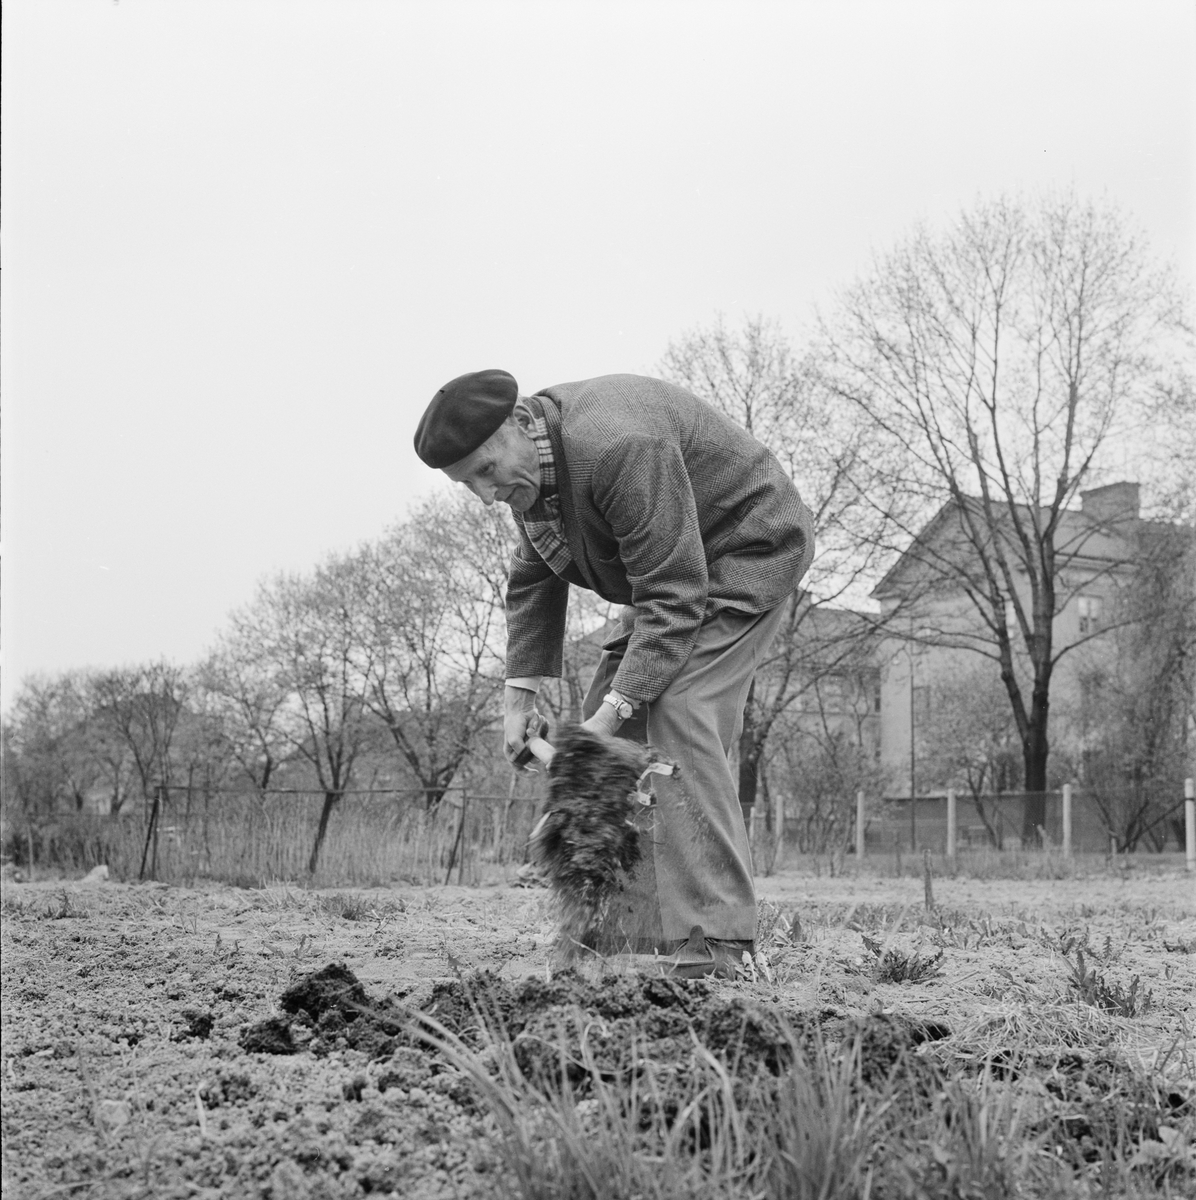 "Gubbe som sätter potatis", Uppsala april 1964